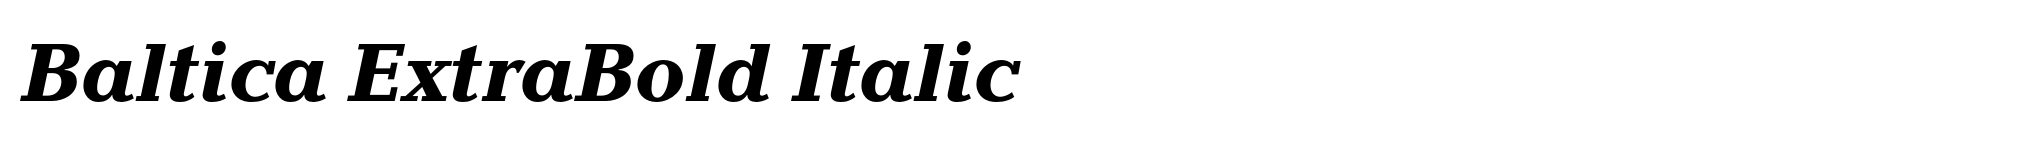 Baltica ExtraBold Italic image